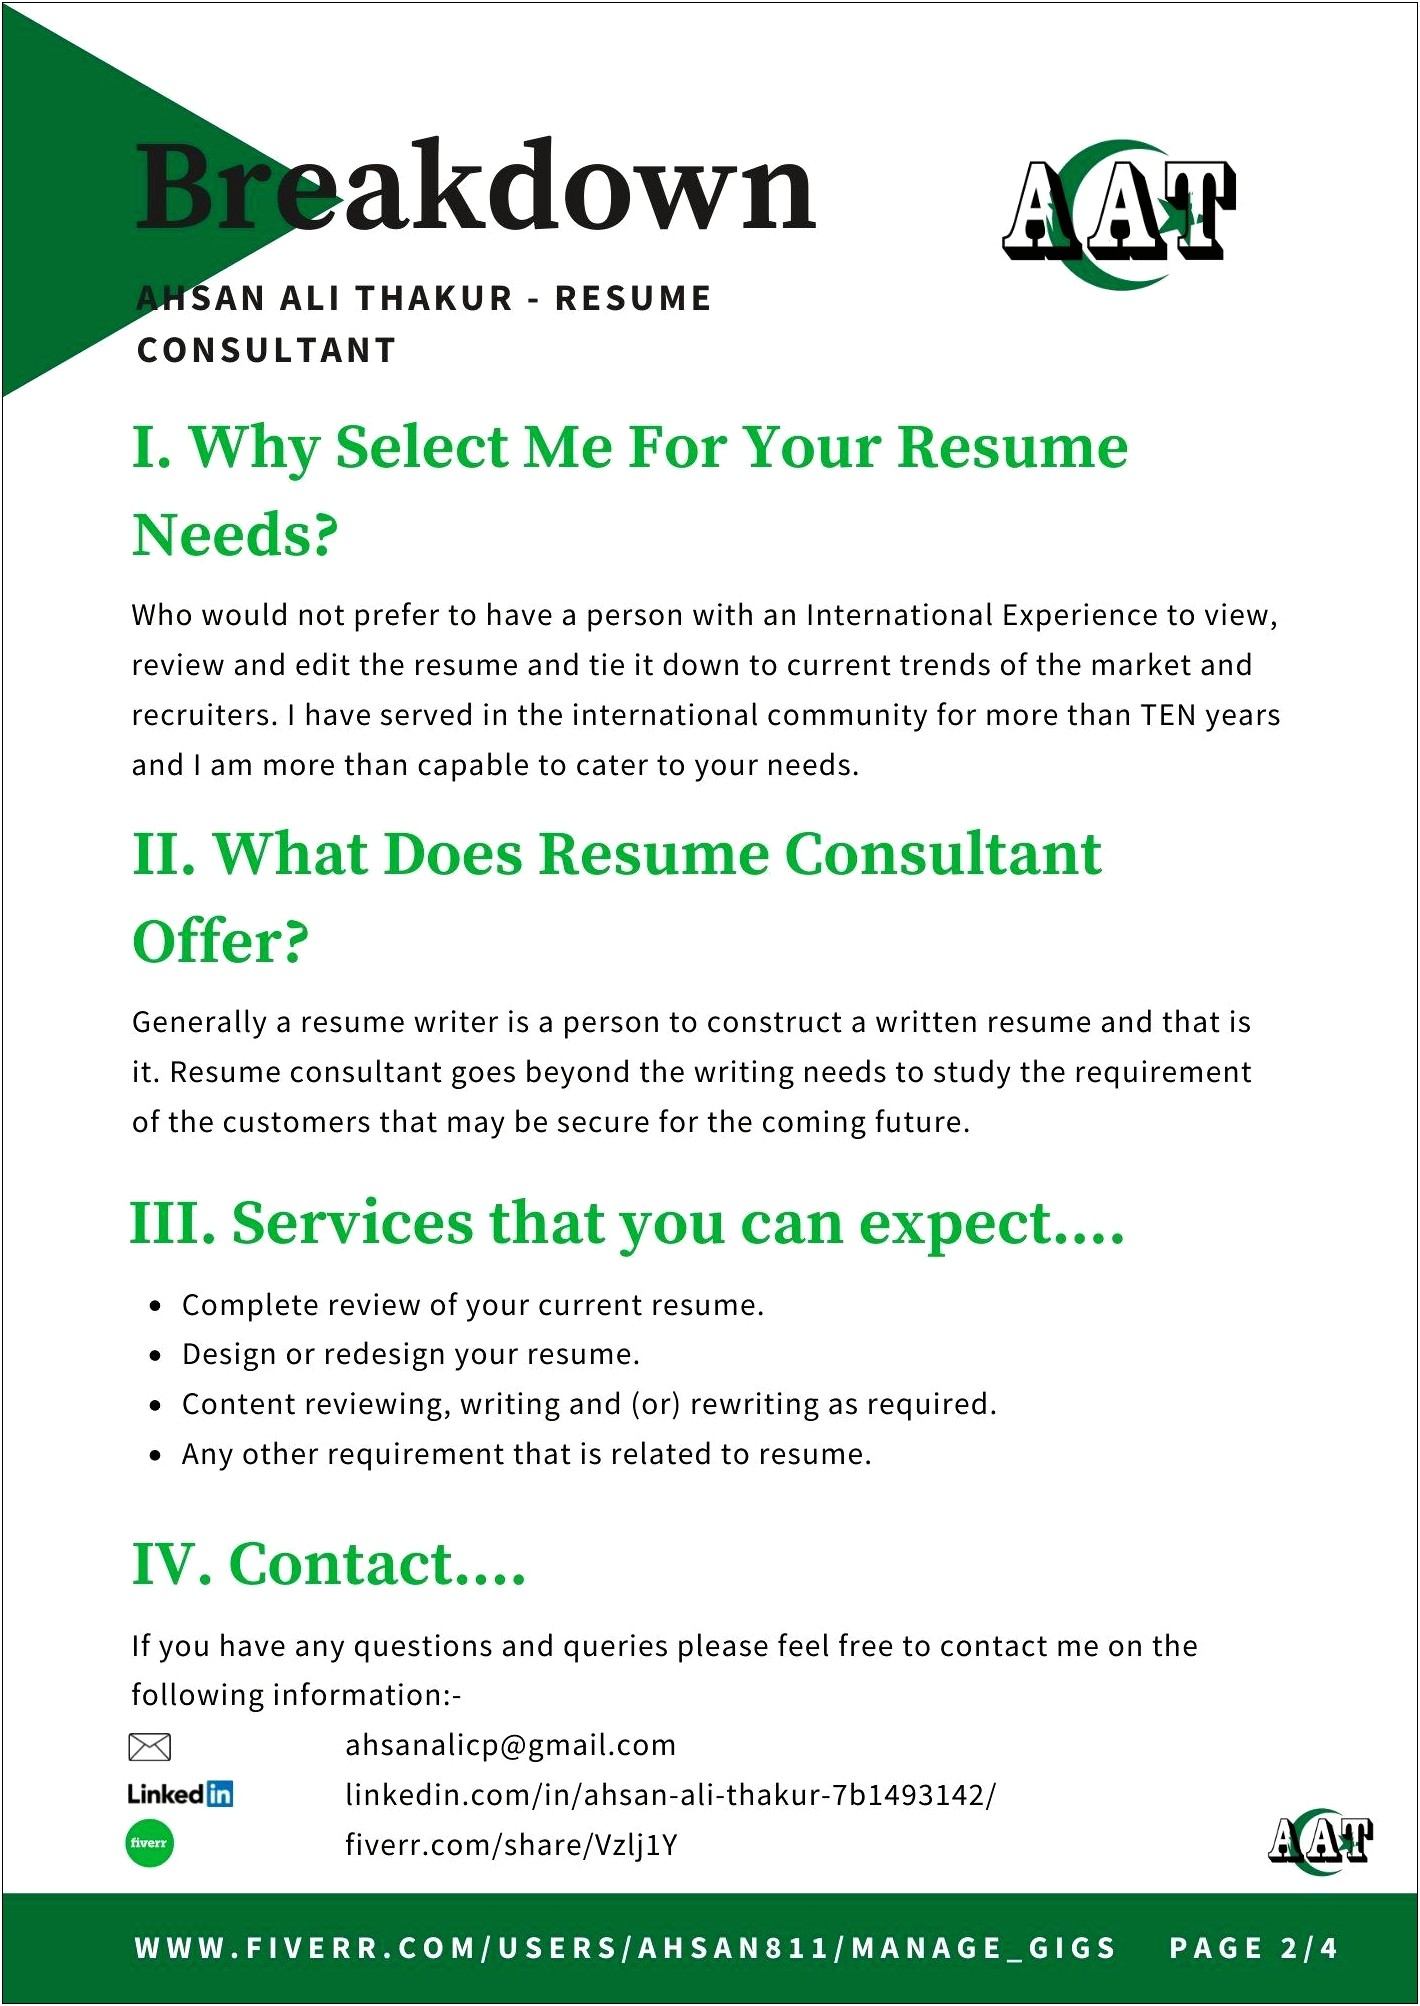 Job Applications Resume Site Fiverr.com